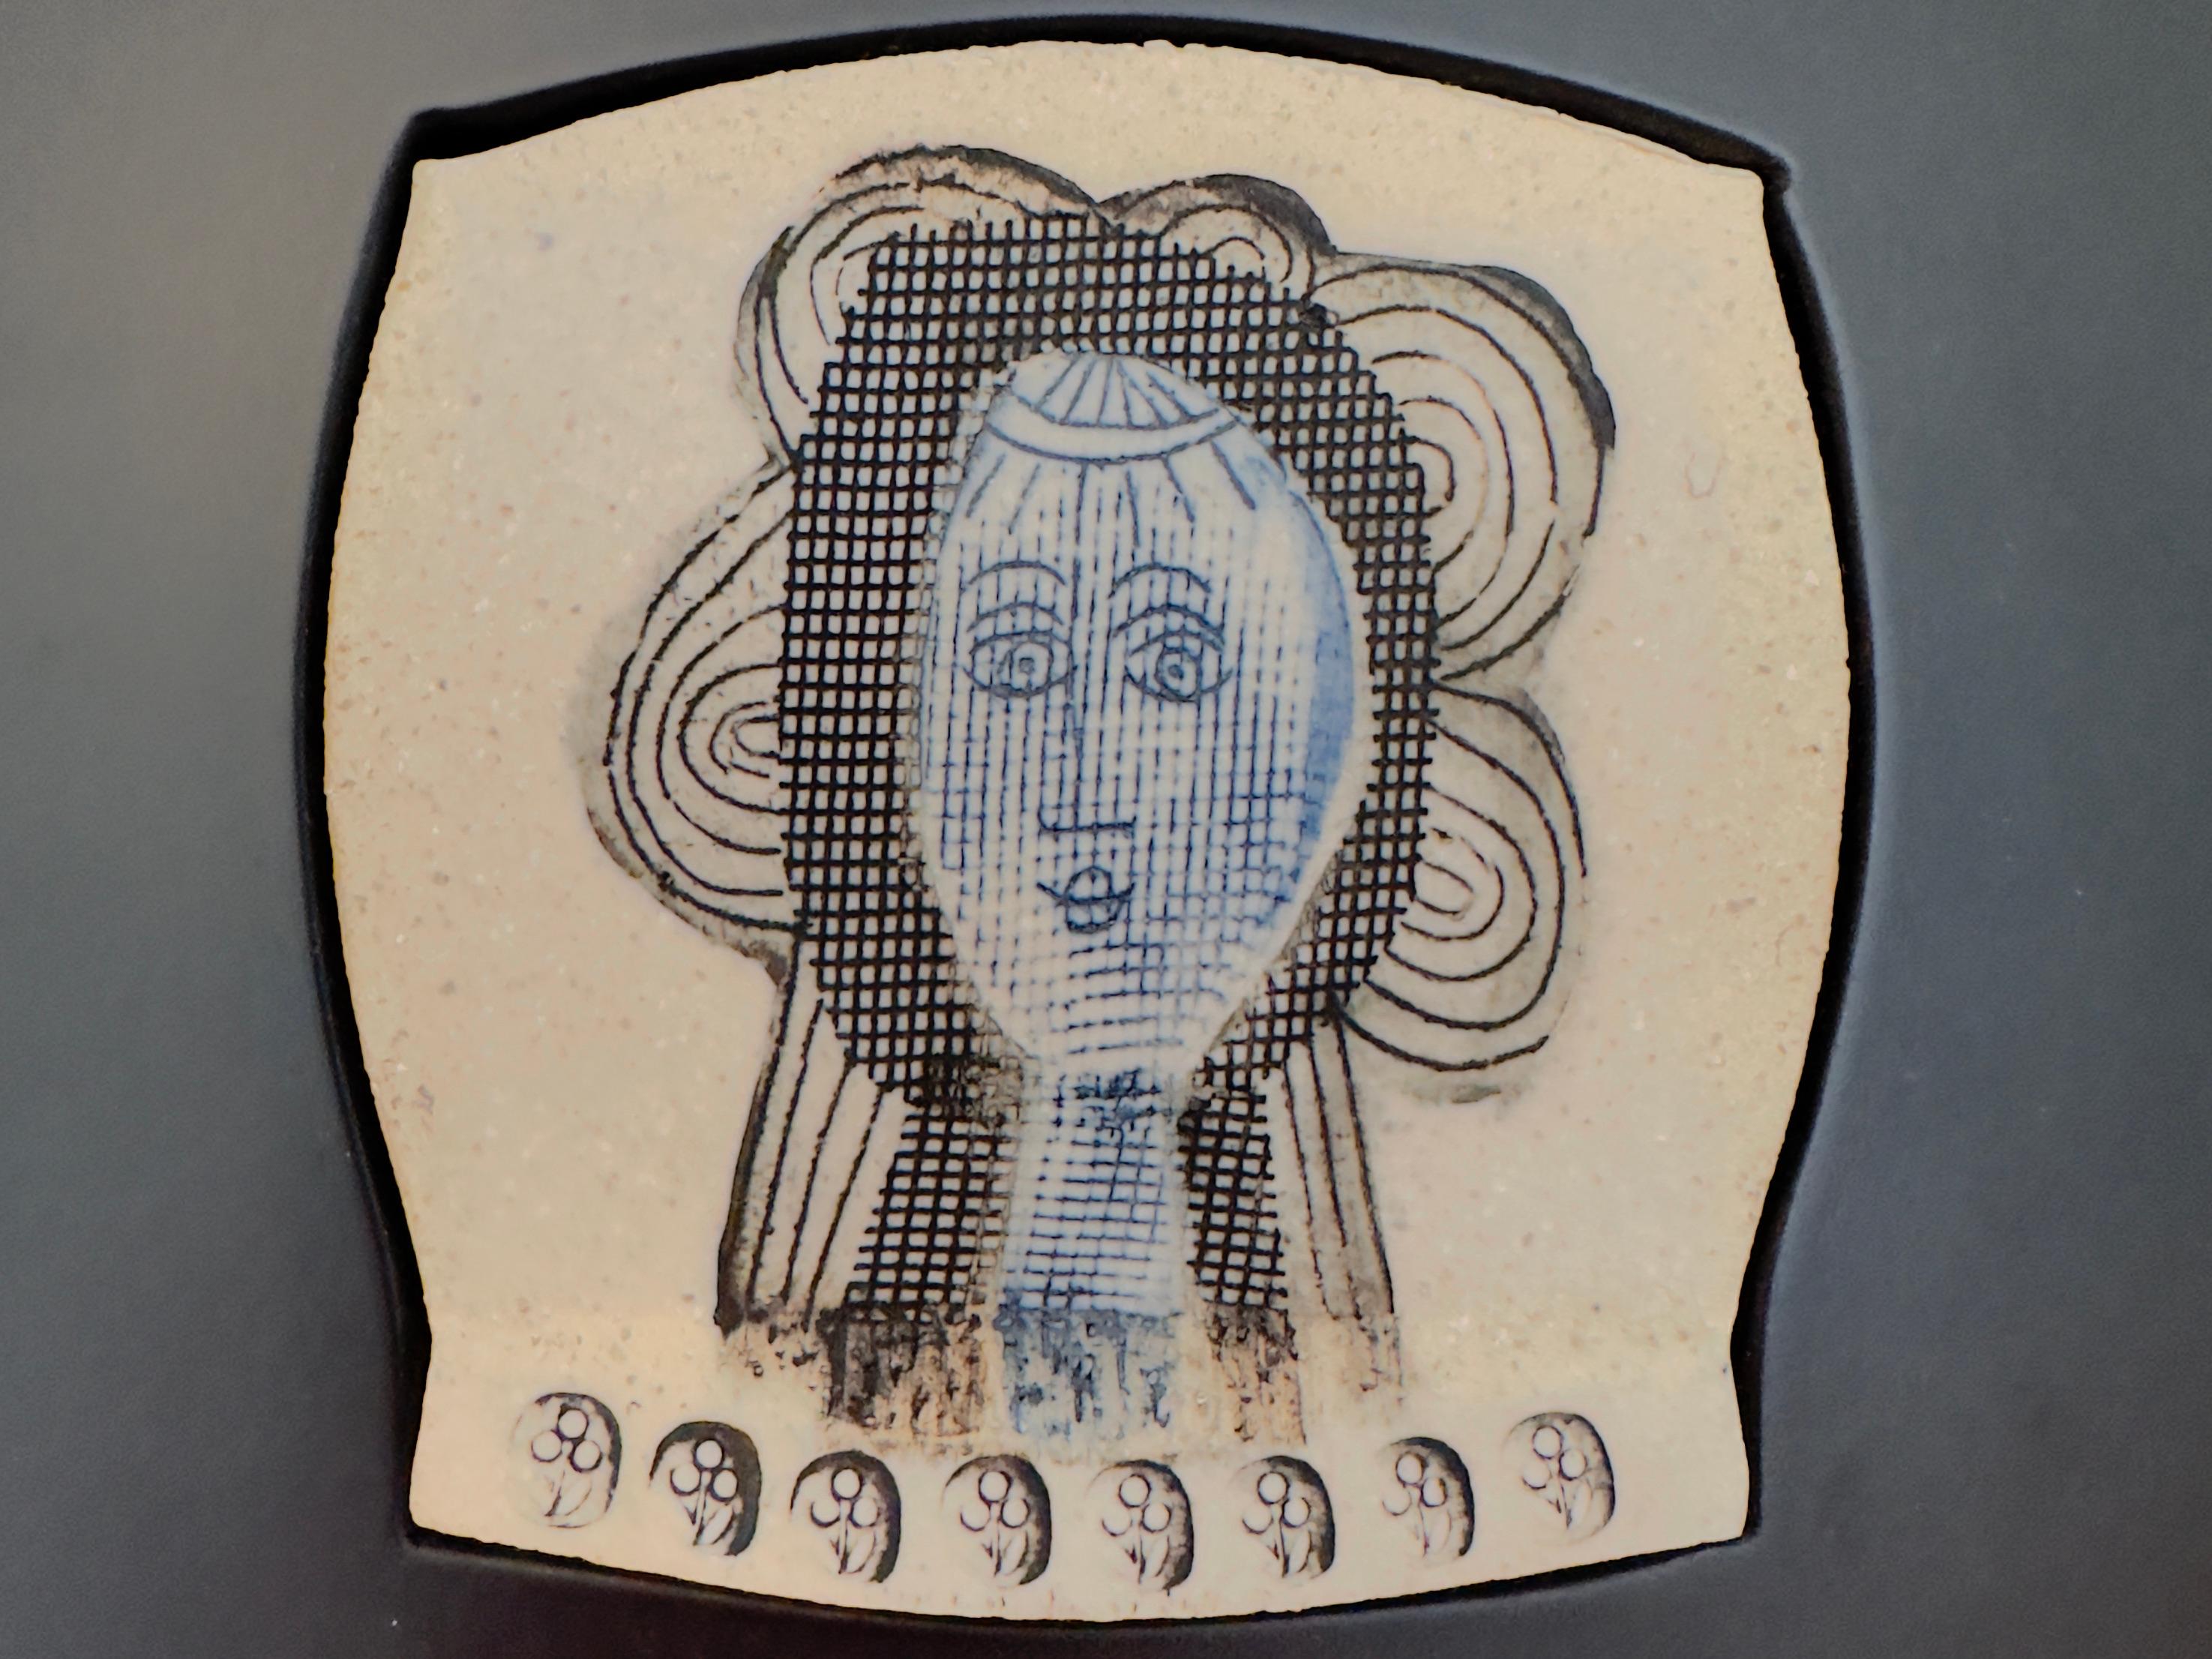 Charmantes Porträt auf geprägtem Steingut mit Oxiddekor und auf der Rückseite signiert.

Rahmen aus schwarz lackiertem Holz.

Perfekter Originalzustand.


Über den Künstler 

Roger Capron (1922-2006) ist einer der herausragendsten Keramiker der